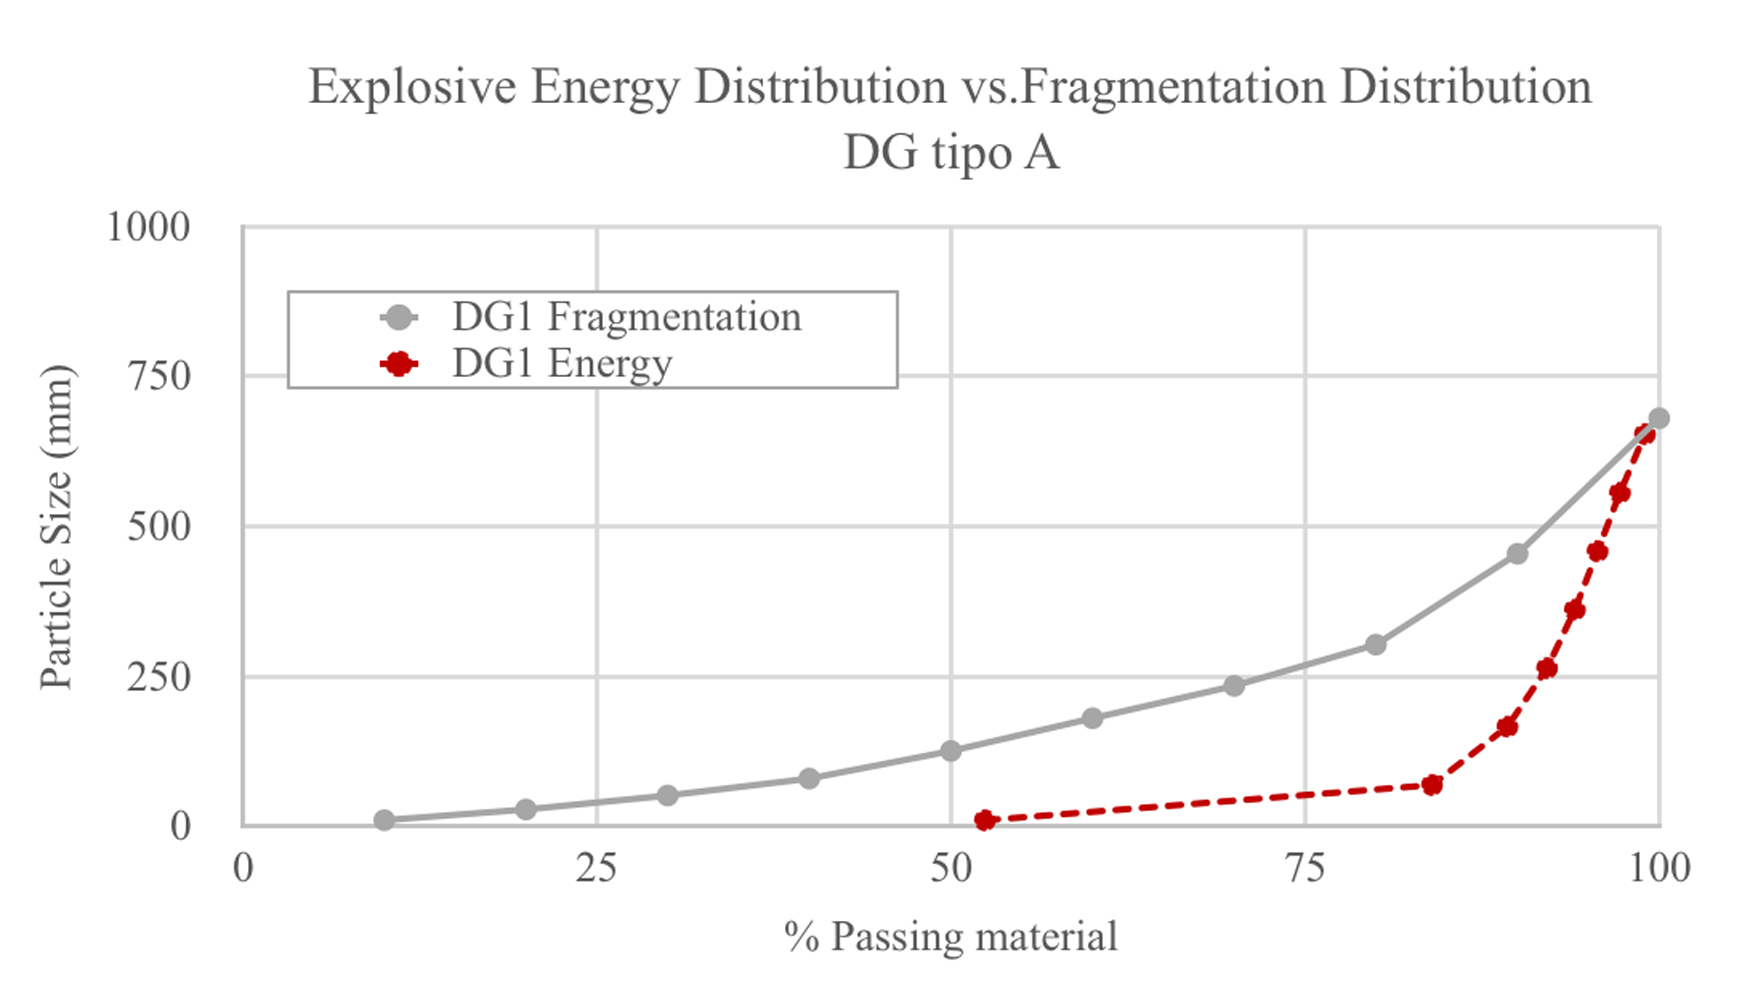 Fig. 1.- Distribucin de la energa explosiva y la fragmentacin del dominio mineral DG A